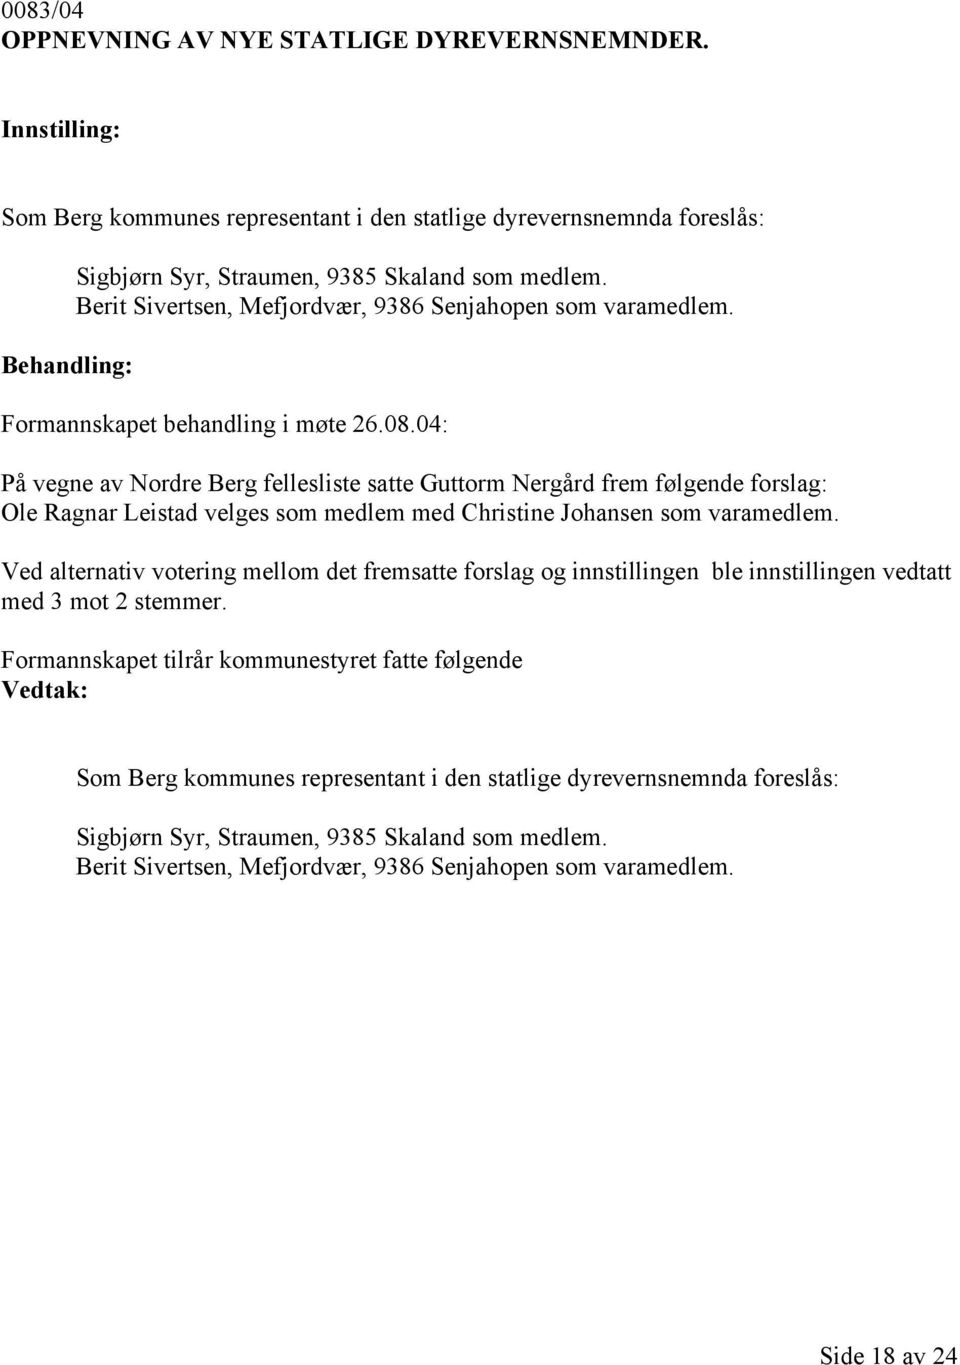 04: På vegne av Nordre Berg fellesliste satte Guttorm Nergård frem følgende forslag: Ole Ragnar Leistad velges som medlem med Christine Johansen som varamedlem.